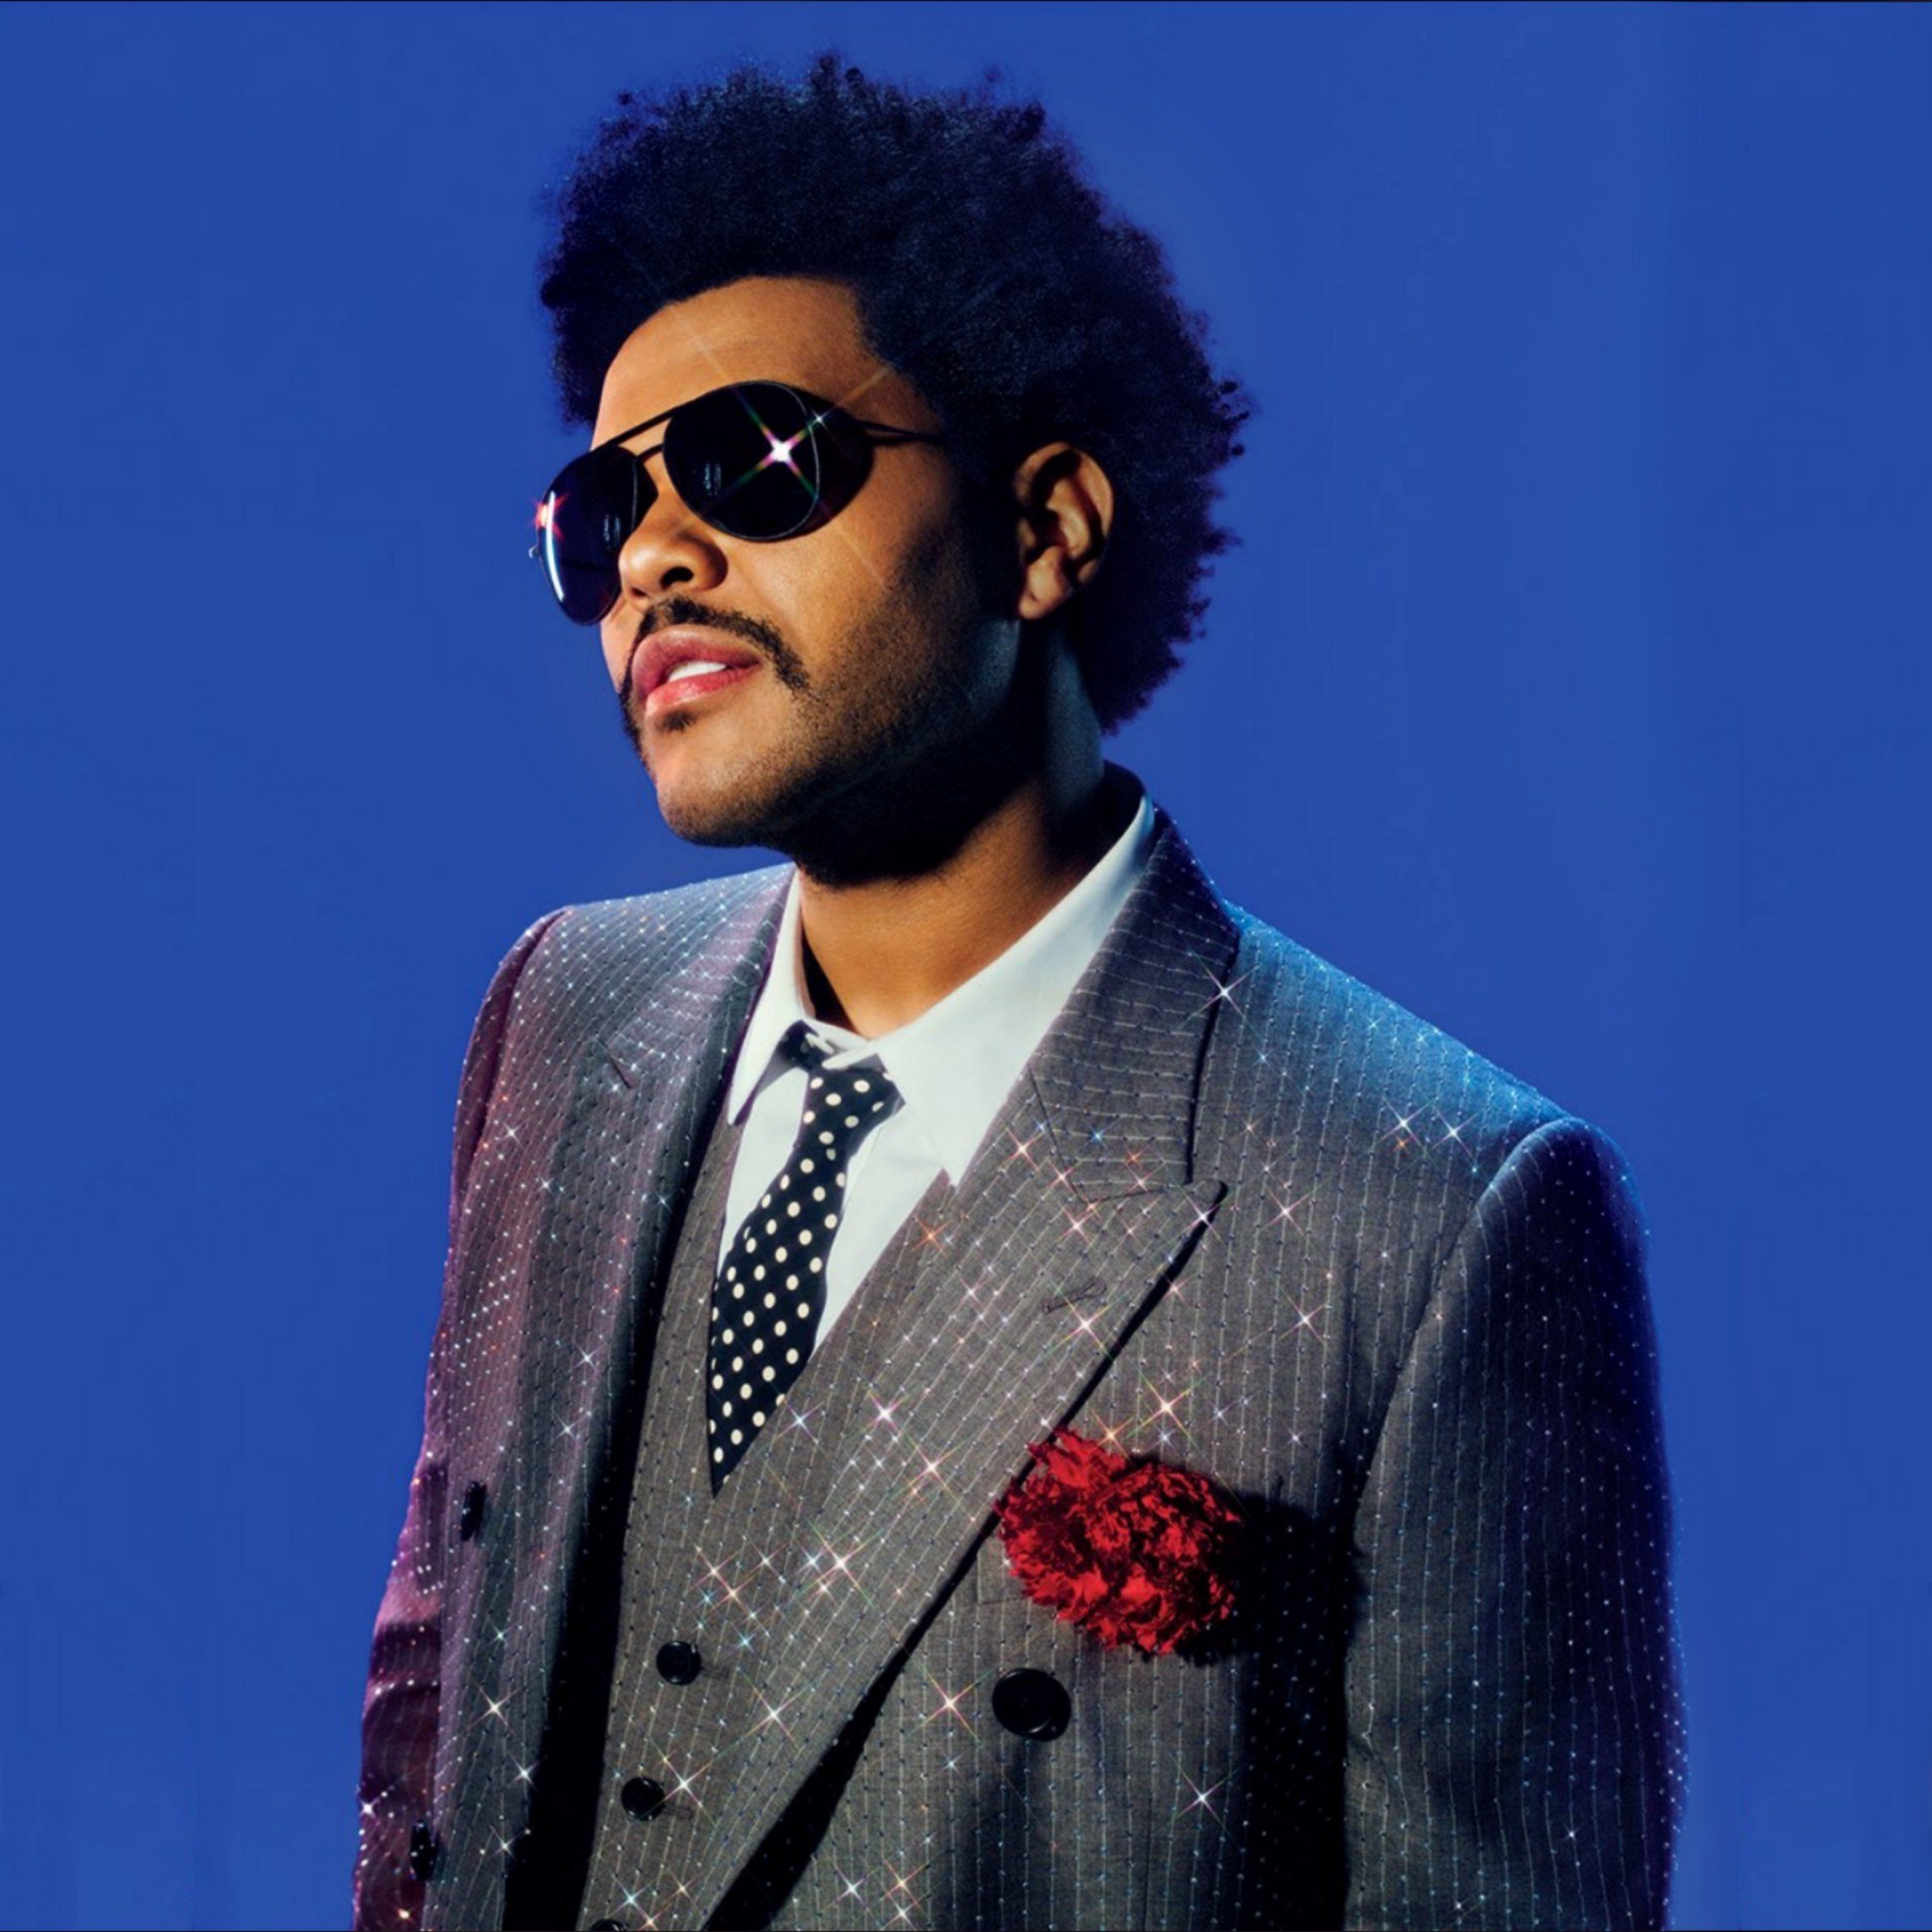 Песни викенд слушать. The Weeknd. Певец the Weeknd. The Weeknd фото. The Weeknd певец 2020.